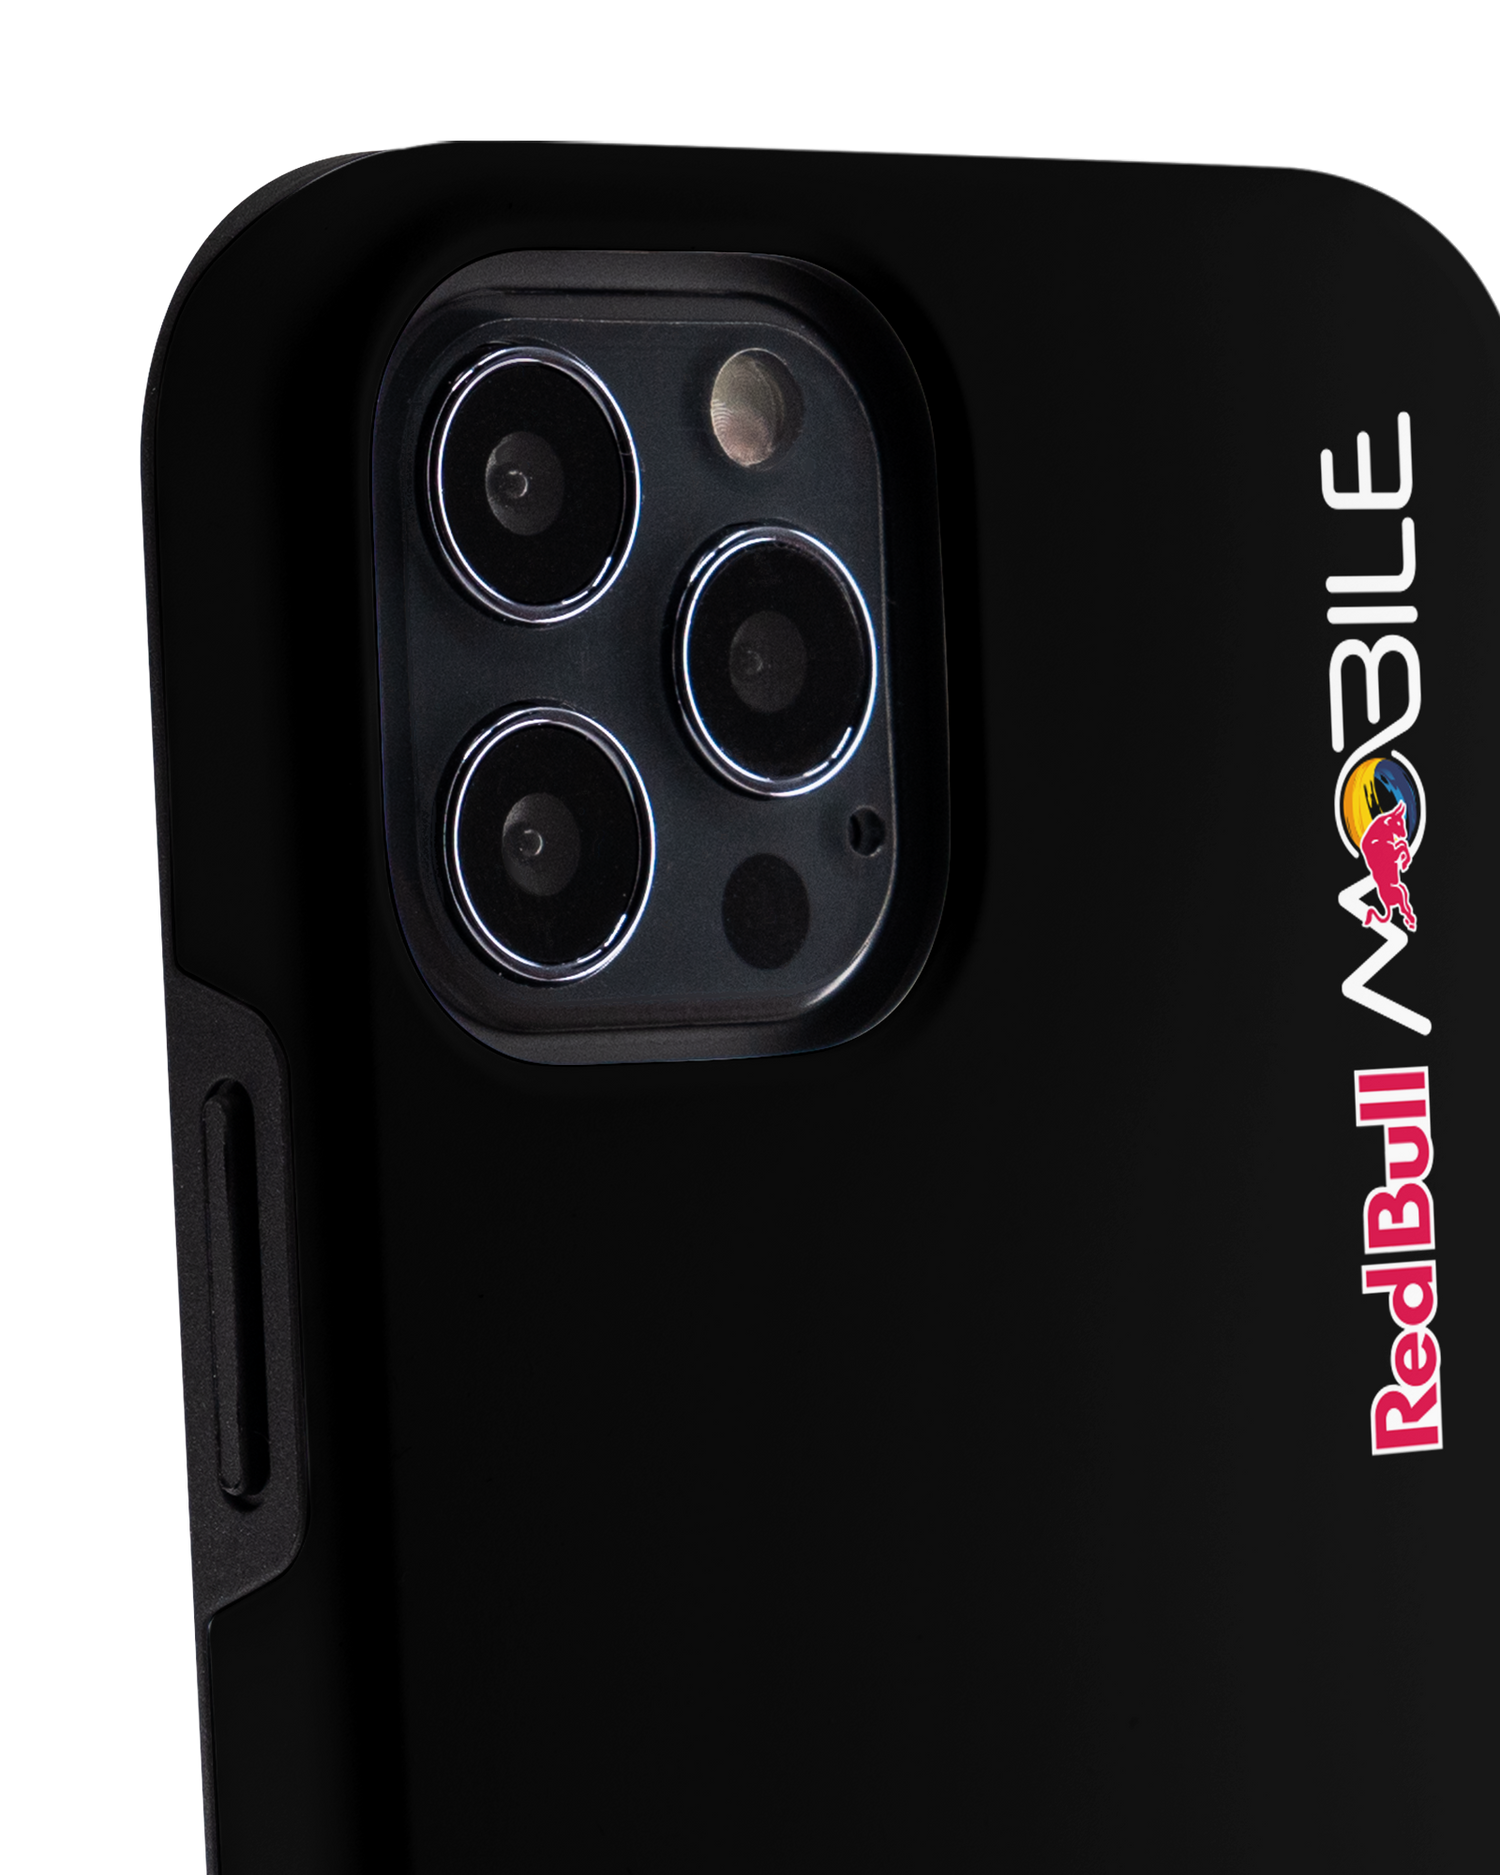 Red Bull MOBILE Black Premium Phone Case Apple iPhone 12 Pro Max